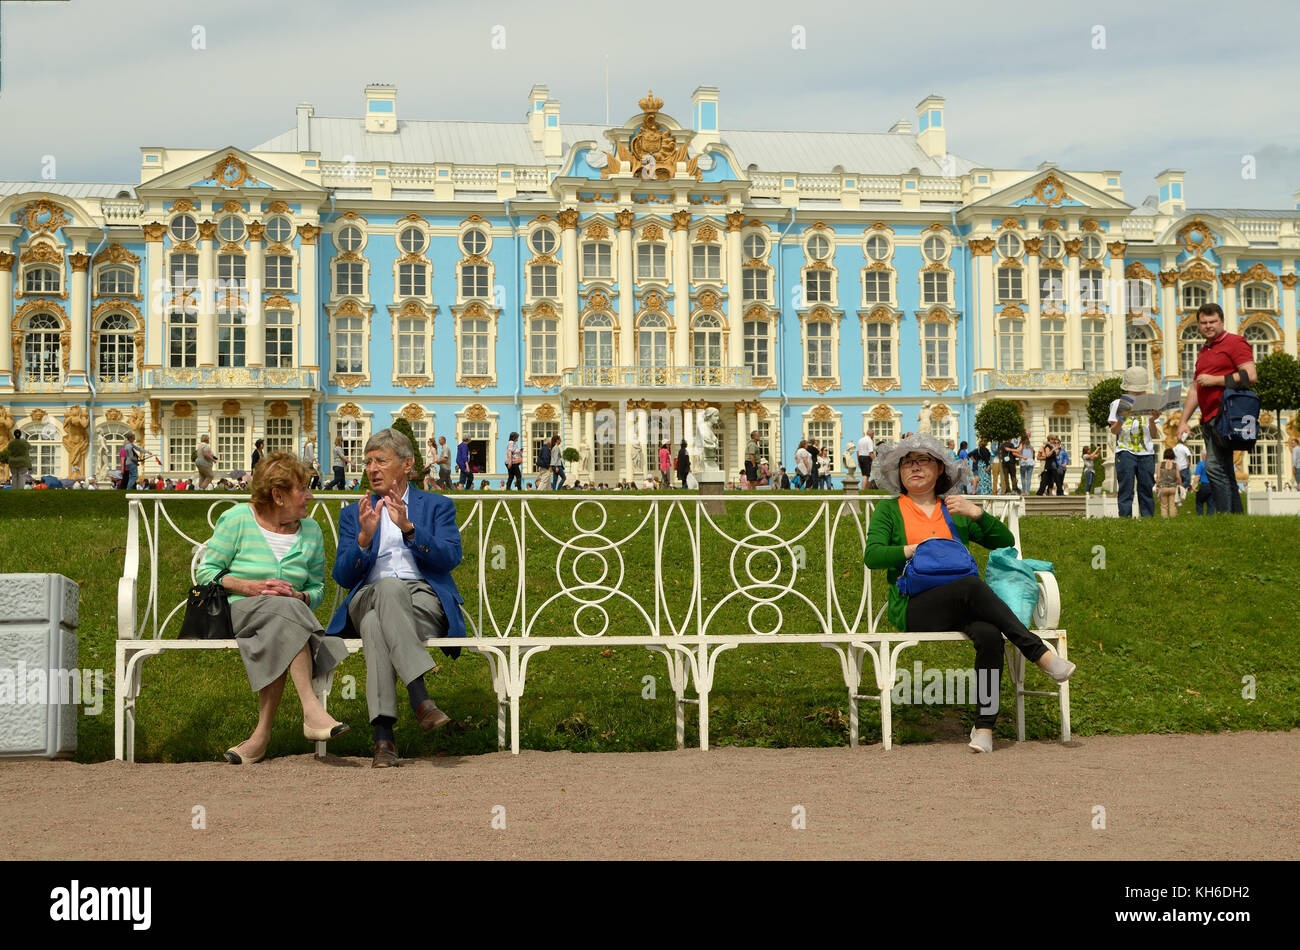 23.06.2016. Russland. puschkin. Die catherine Palace. Touristen, die auf der Richtbank. Stockfoto